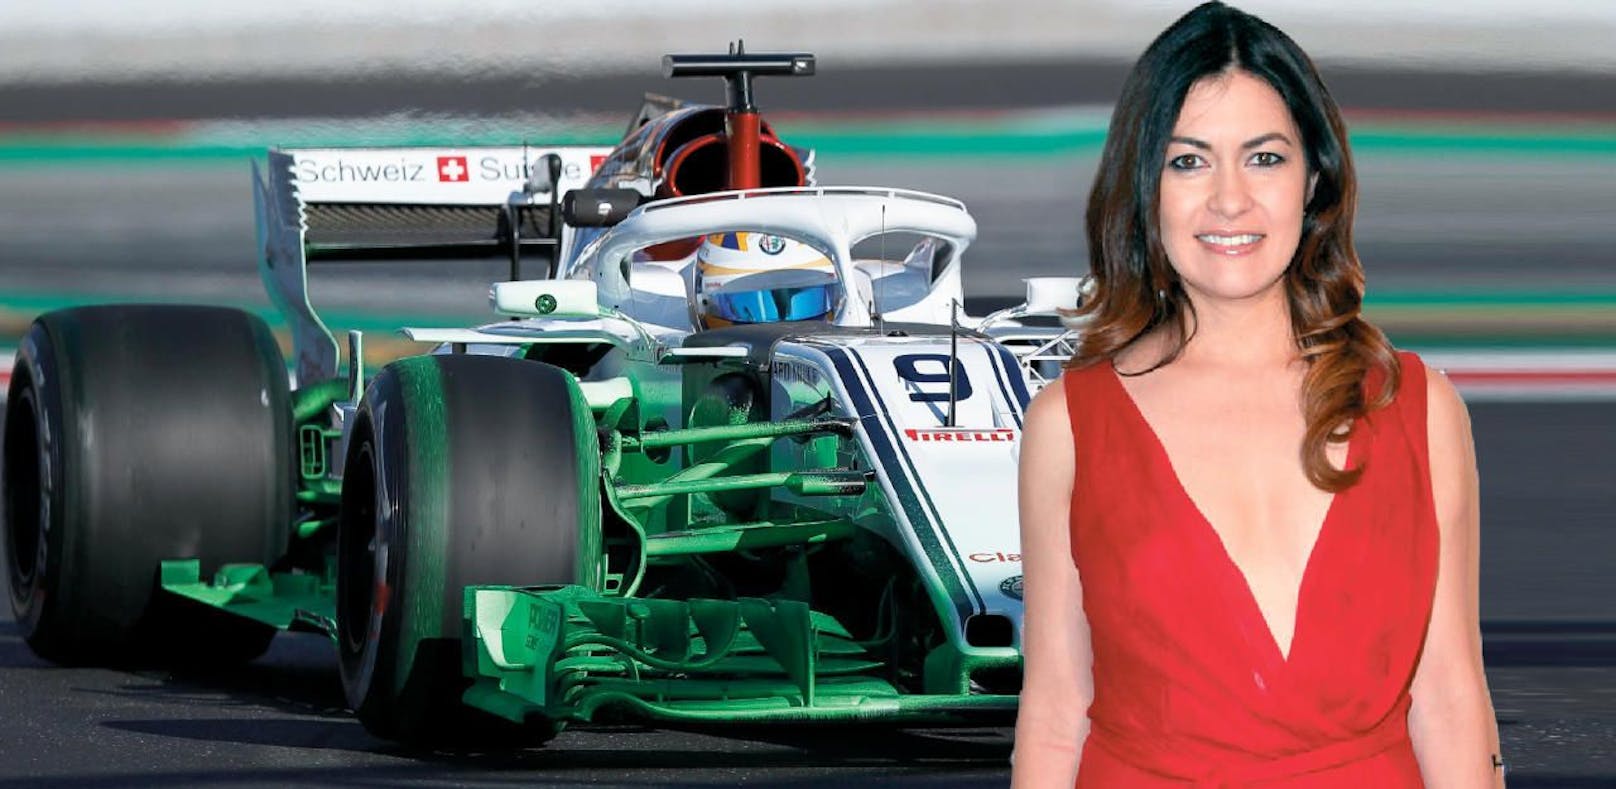 Paukenschlag! Eine Frau darf in Formel 1 ans Steuer